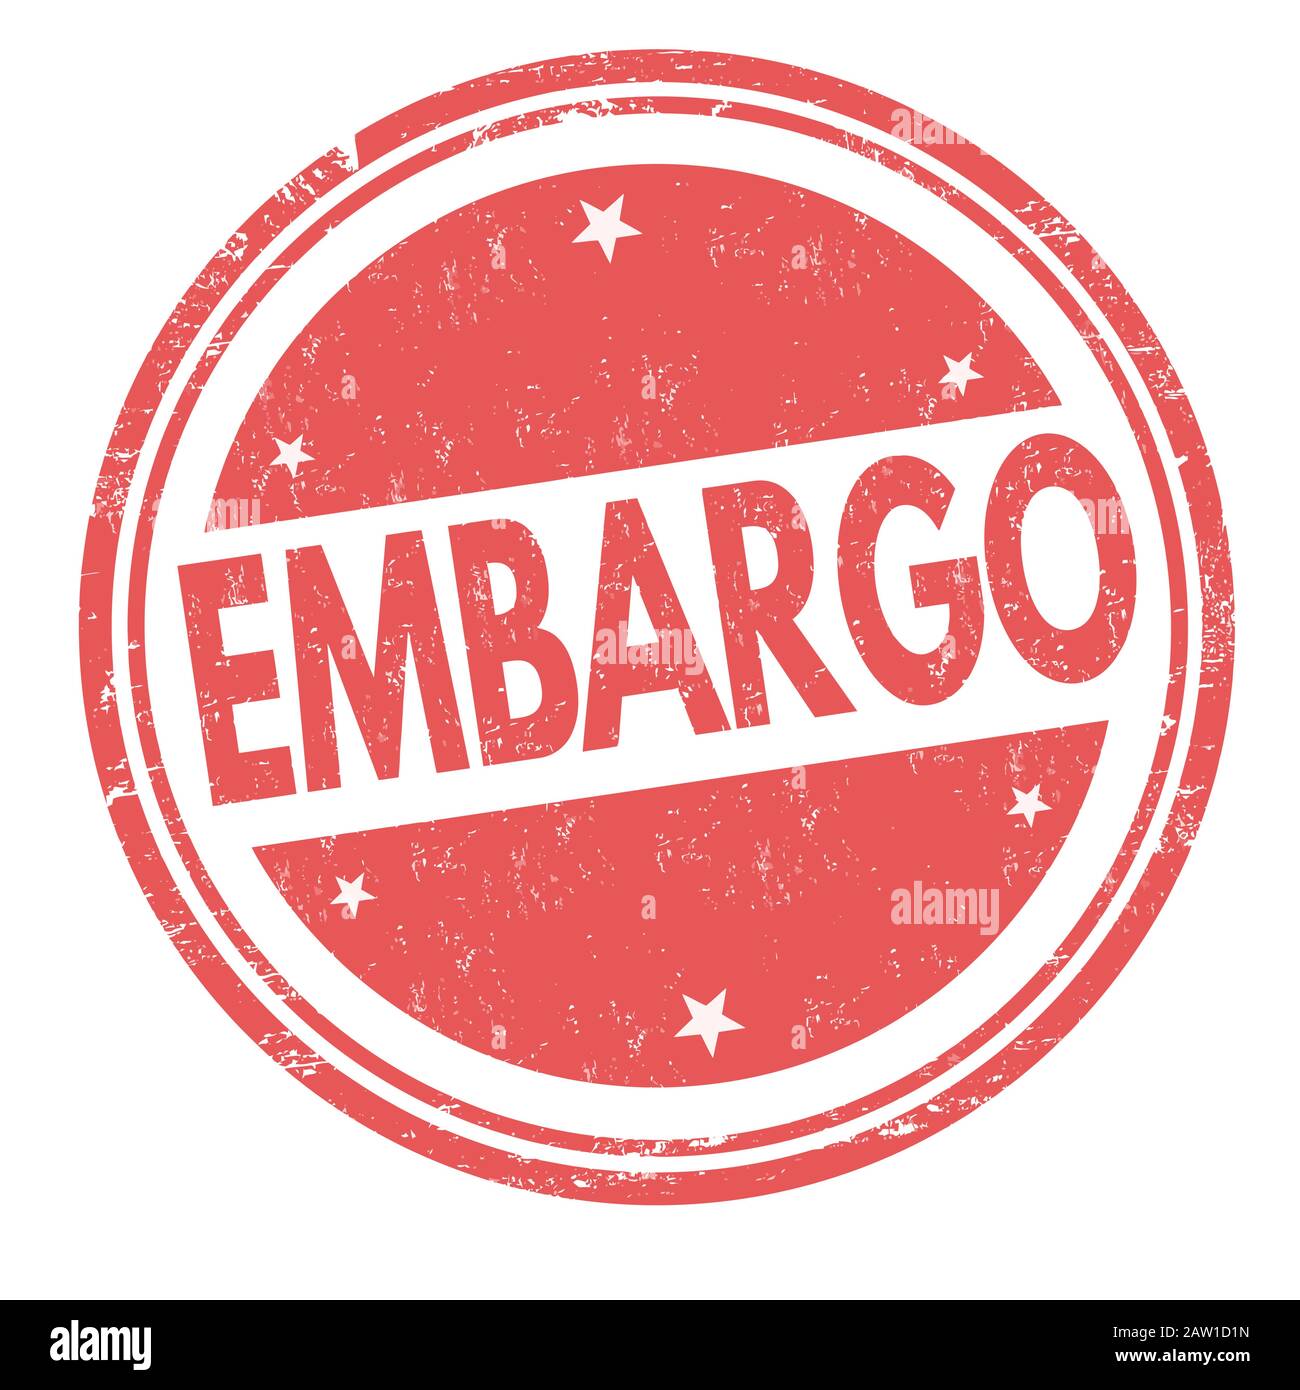 Embargo-Zeichen oder -Stempel auf weißem Hintergrund, Vektorgrafiken Stock Vektor